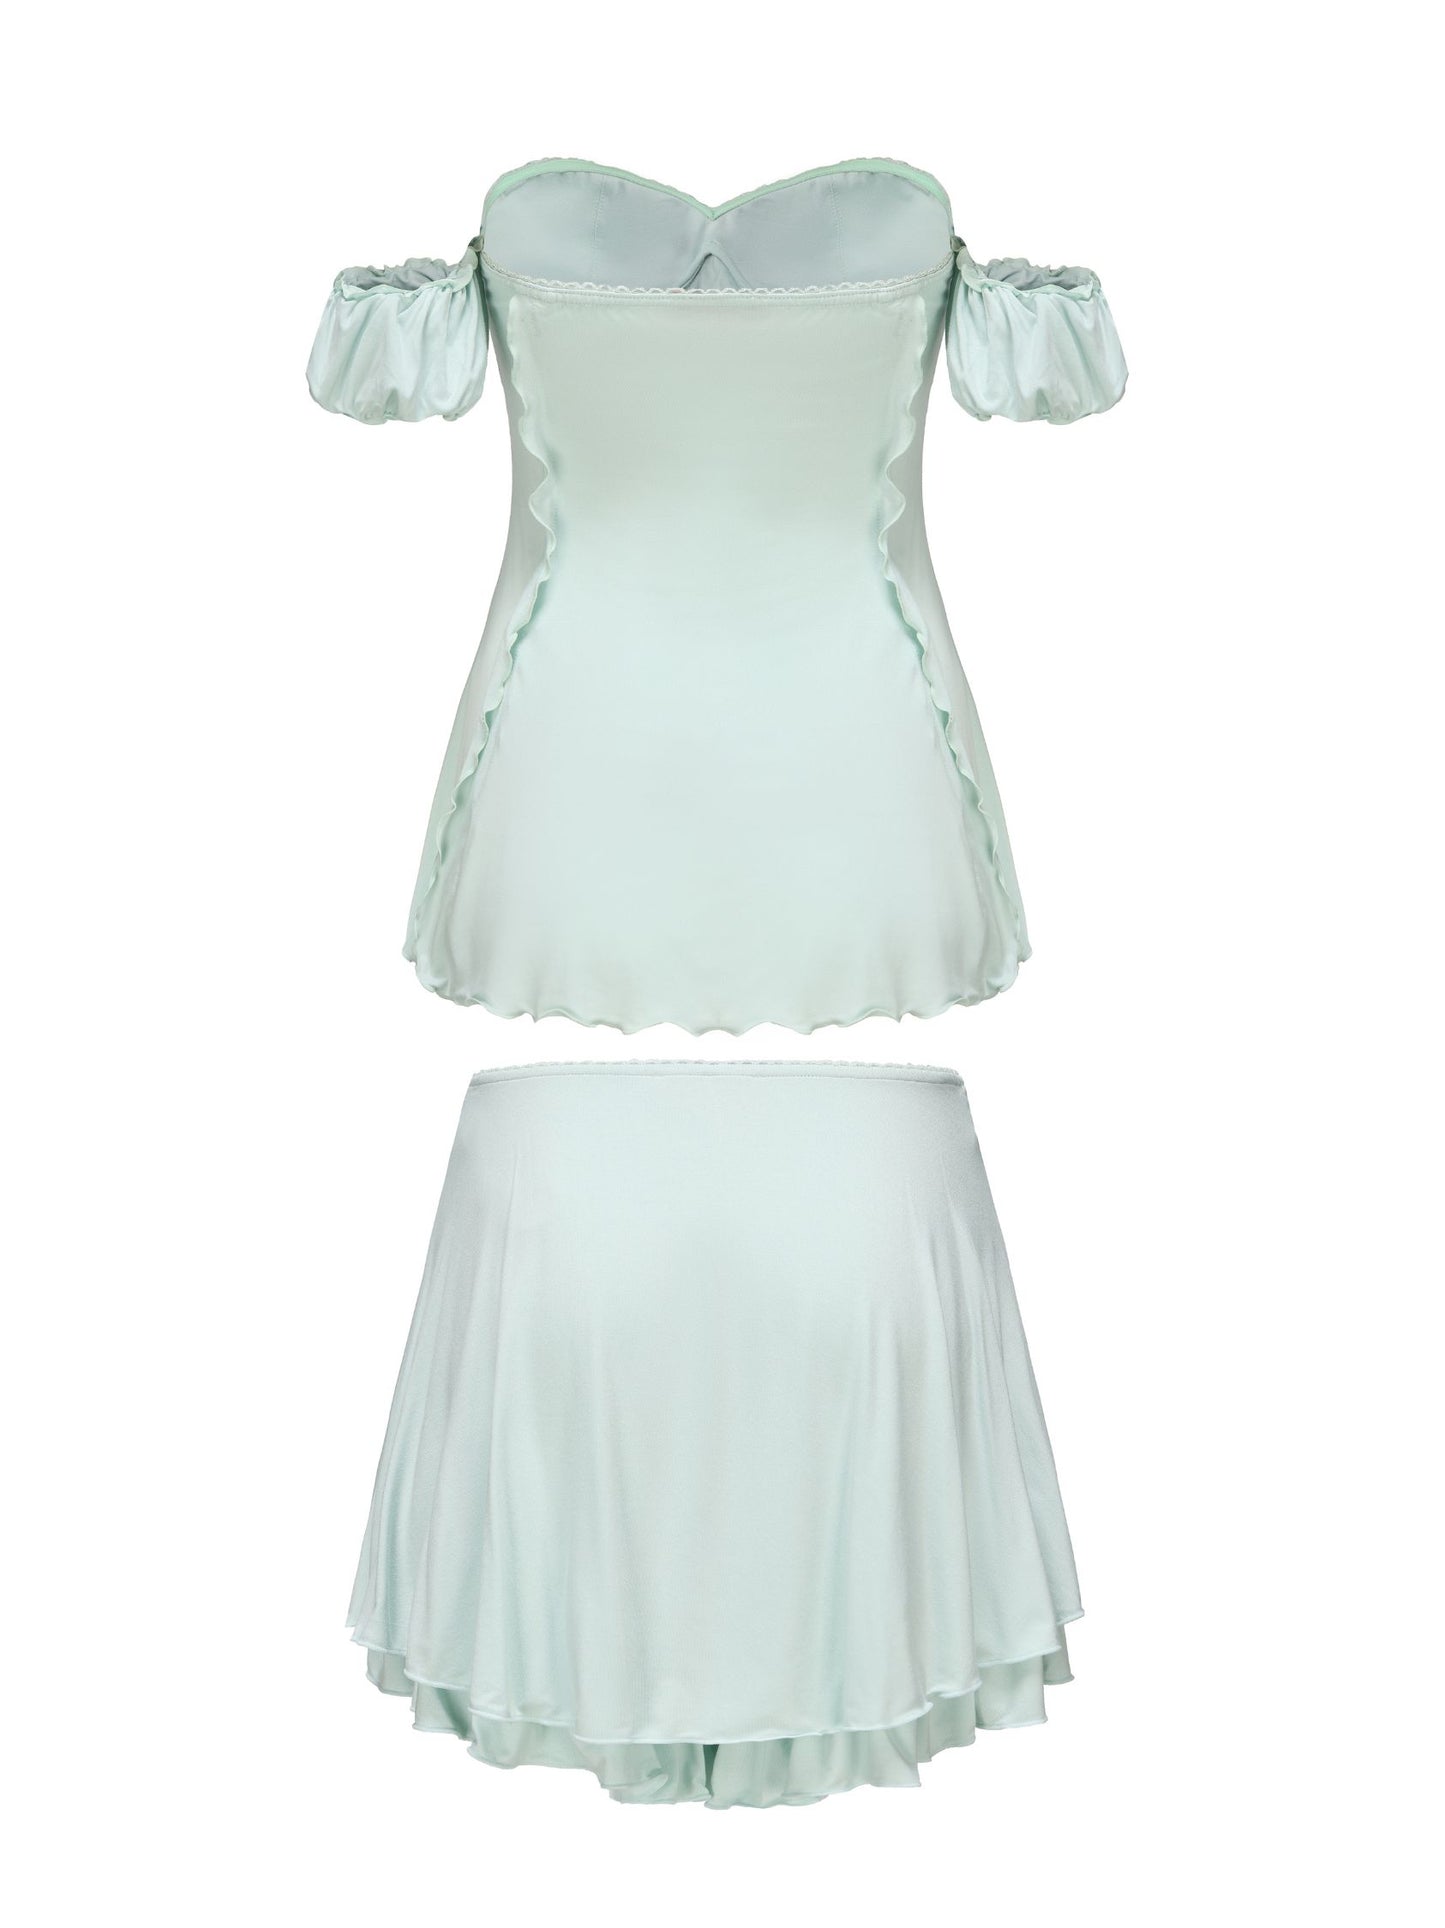 Heidi Top + Skirt (Mint) (Final Sale)